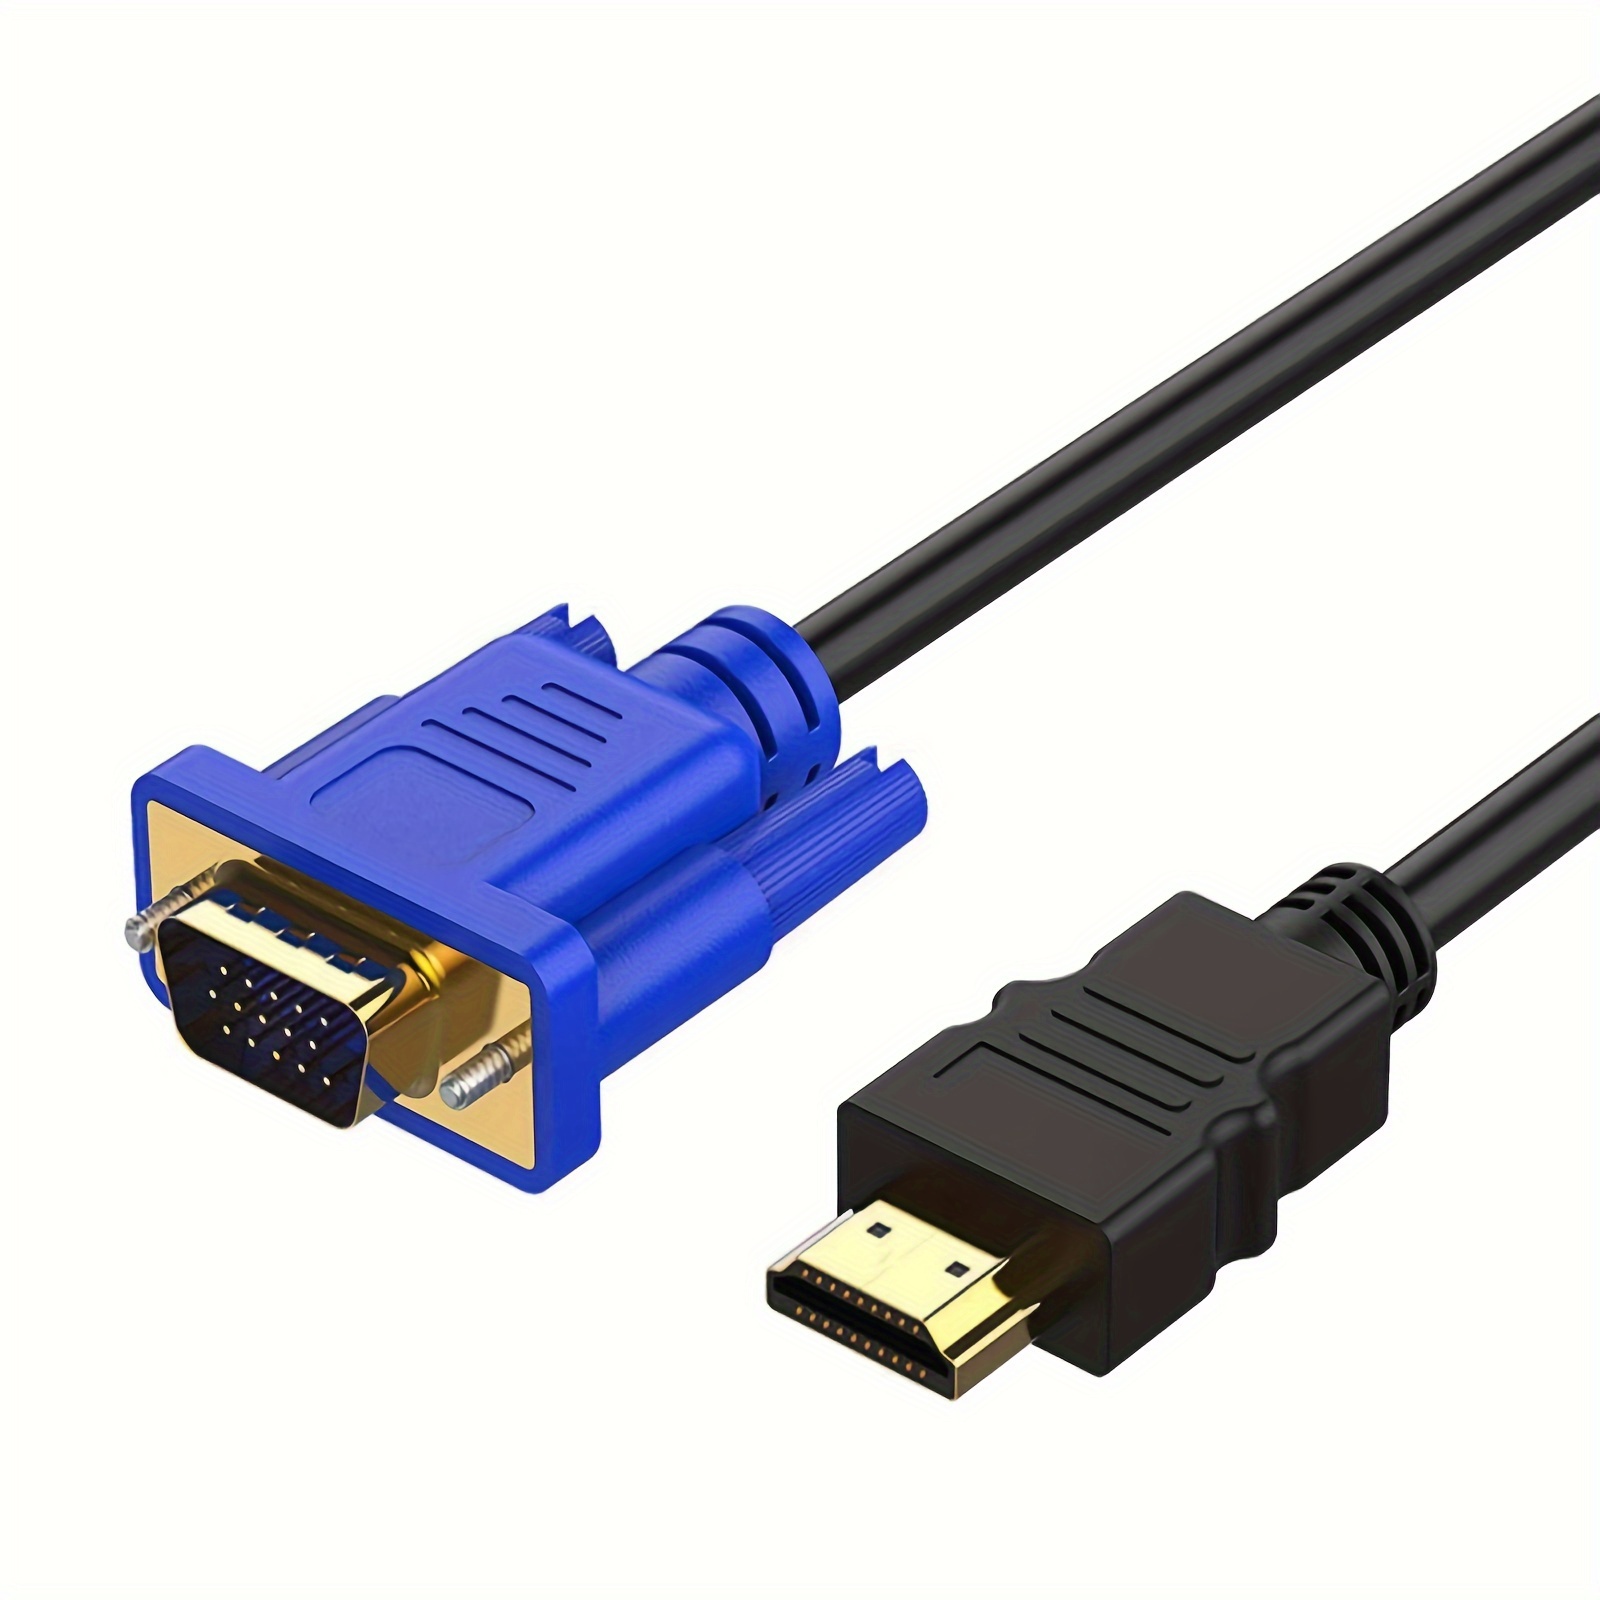 BENFEI Adaptador HDMI a VGA 1080P Convertidor de Vídeo para PC, TV,  Ordenadores Portátiles y Otros Dispositivos HDMI - Negro